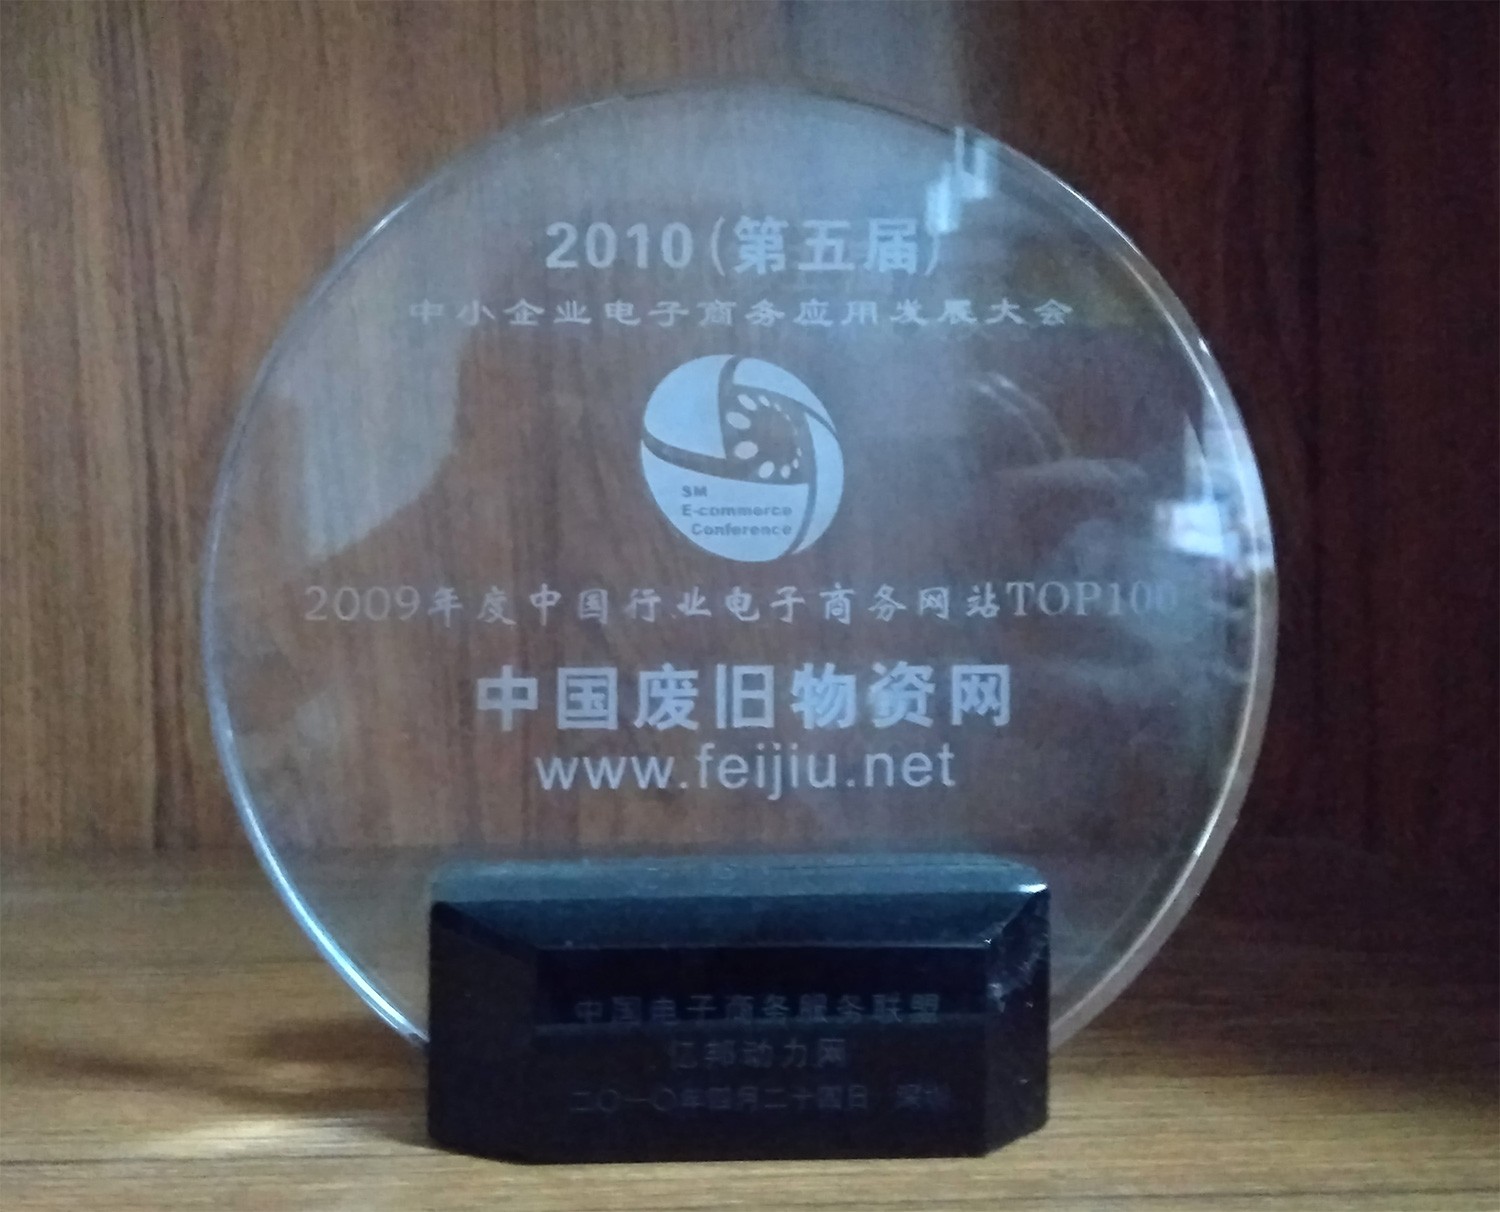 2009年度中国行业电子商务网站TOP100